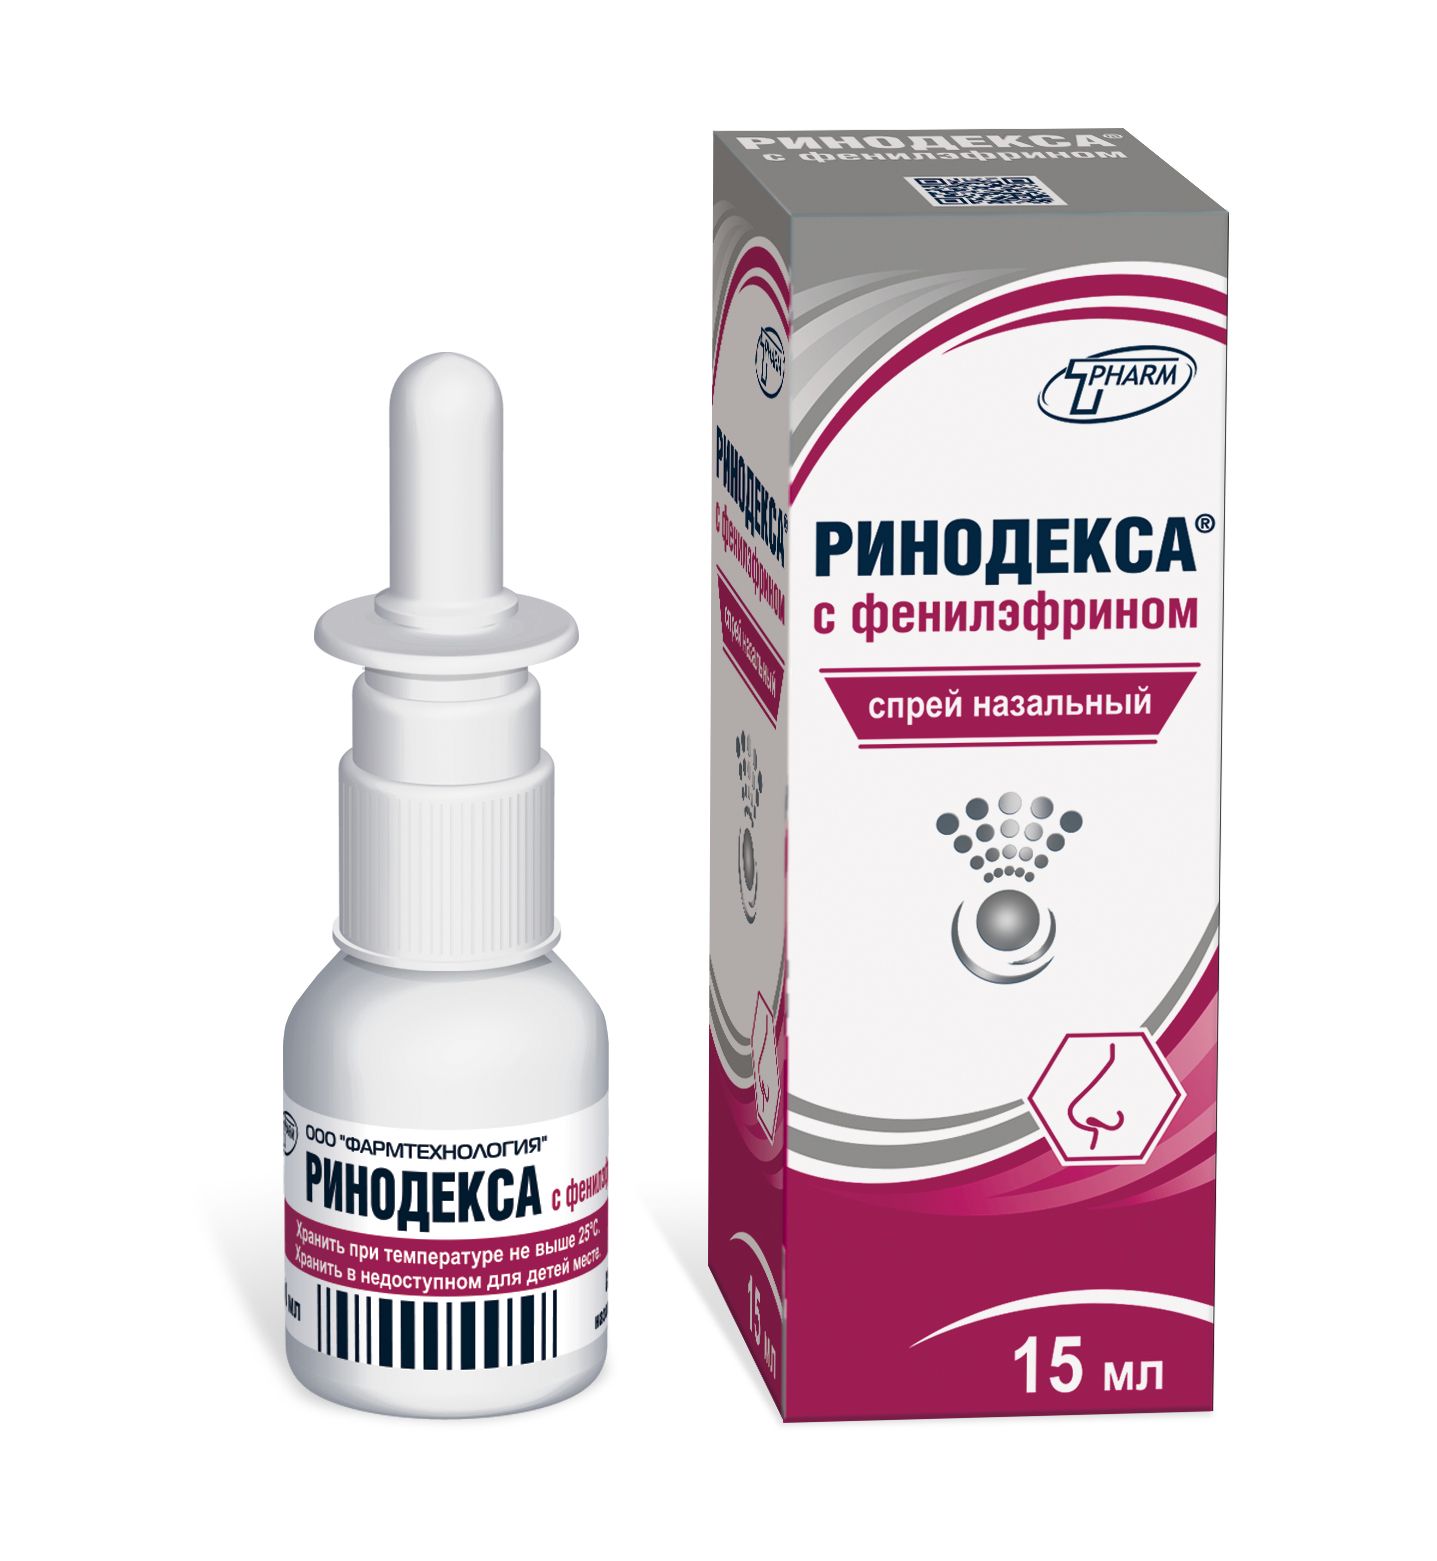 Ринодекса® с фенилэфрином